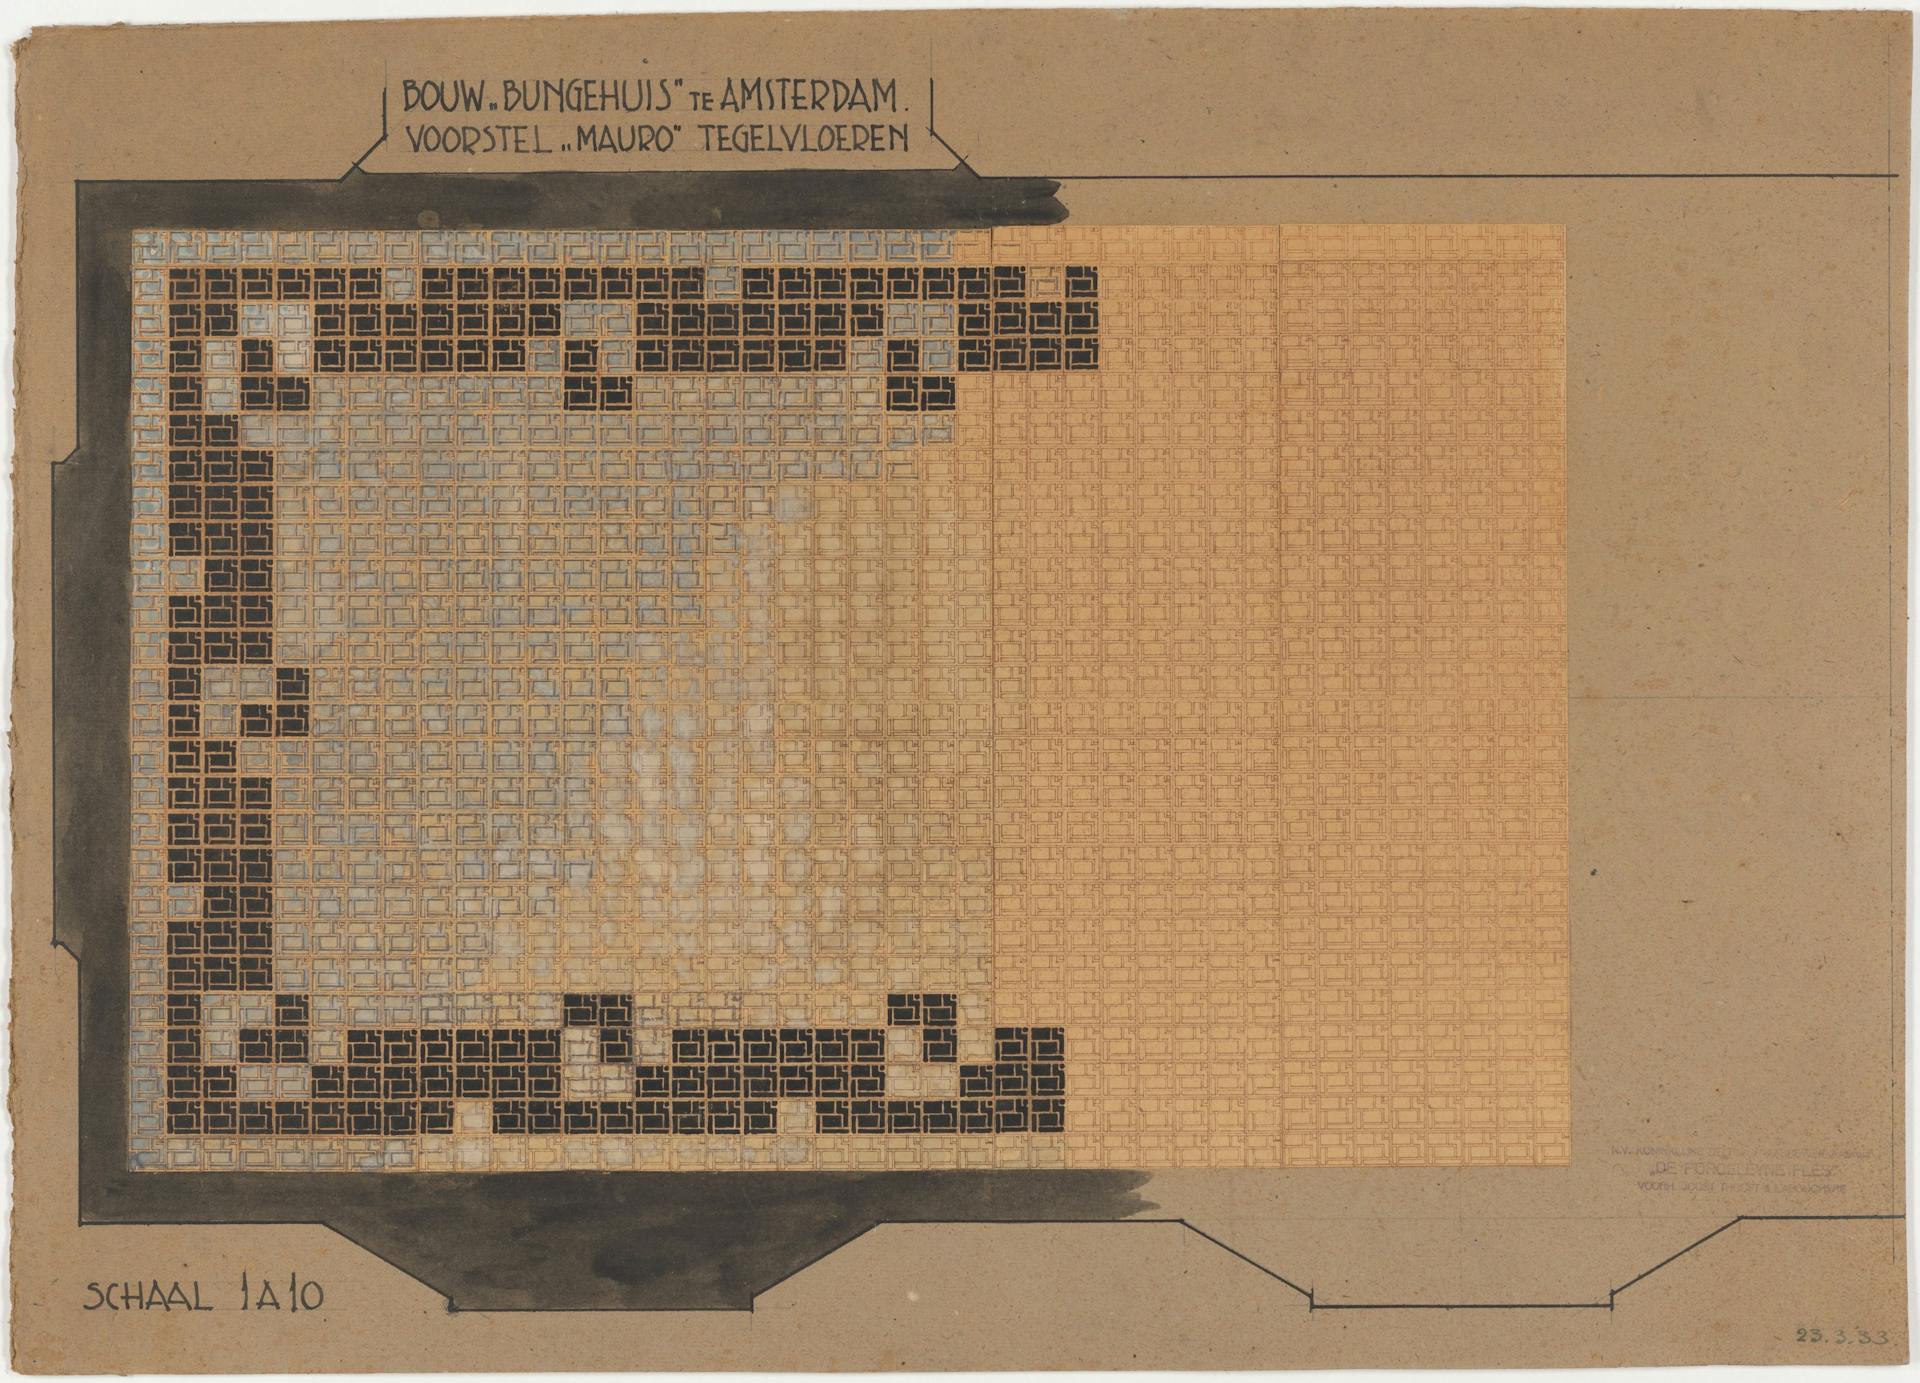 Van Gendt gebruikte hier de diazotypie voor het ontwerp van een Mauro tegelvloer. Hij tekende de hoofdlijnen op het transparant (de eerste versie van de ontwerptekening), maakt een diazotypie en kleurde het patroon van de tegels in met zwa… 